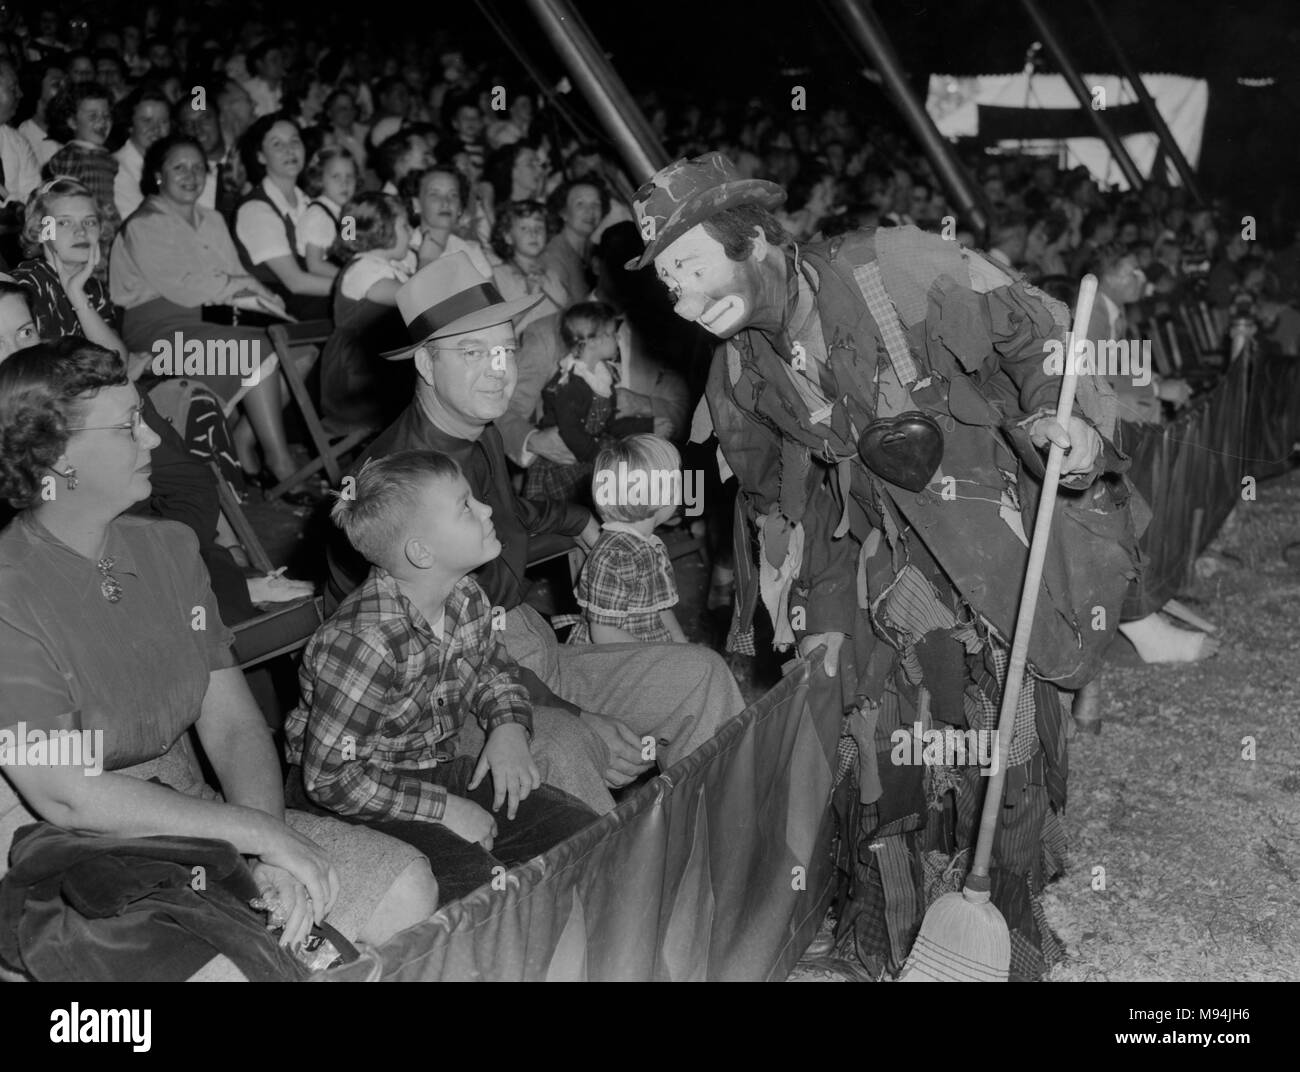 Un clown fonctionne de la foule lors d'une performance de cirque en Géorgie, ca. 1948. Banque D'Images